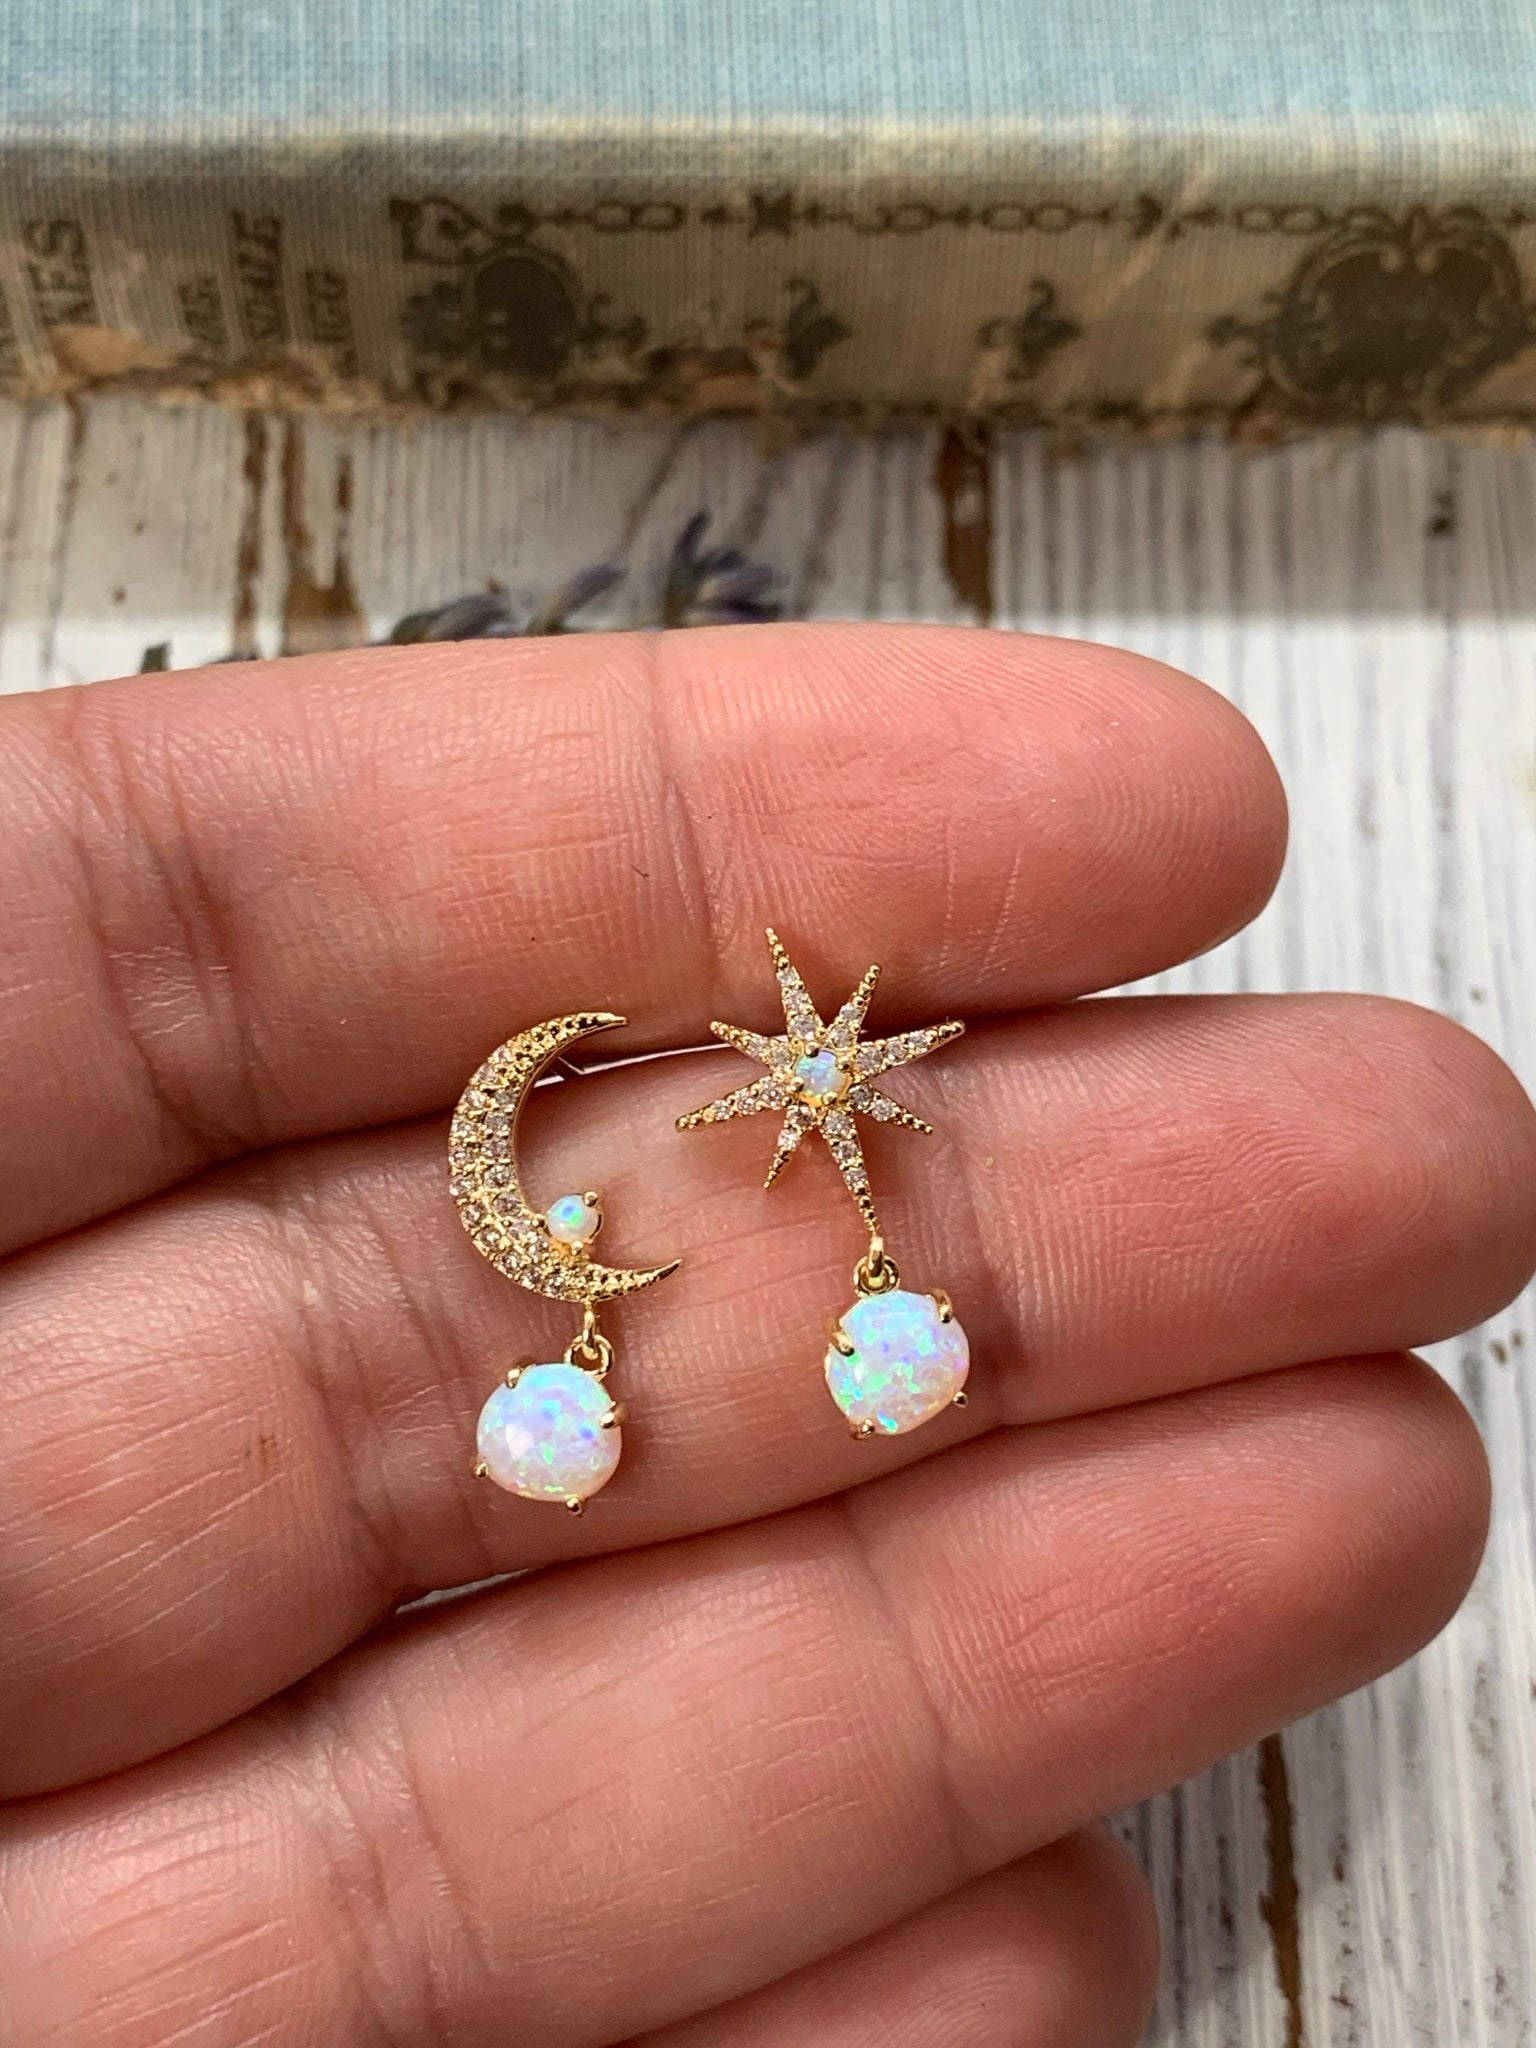 moon and star earrings, opal earrings, dangle earrings, delicate jewelry, gold earrings, gold jewelry, opal, opal star, opal moon, celestial